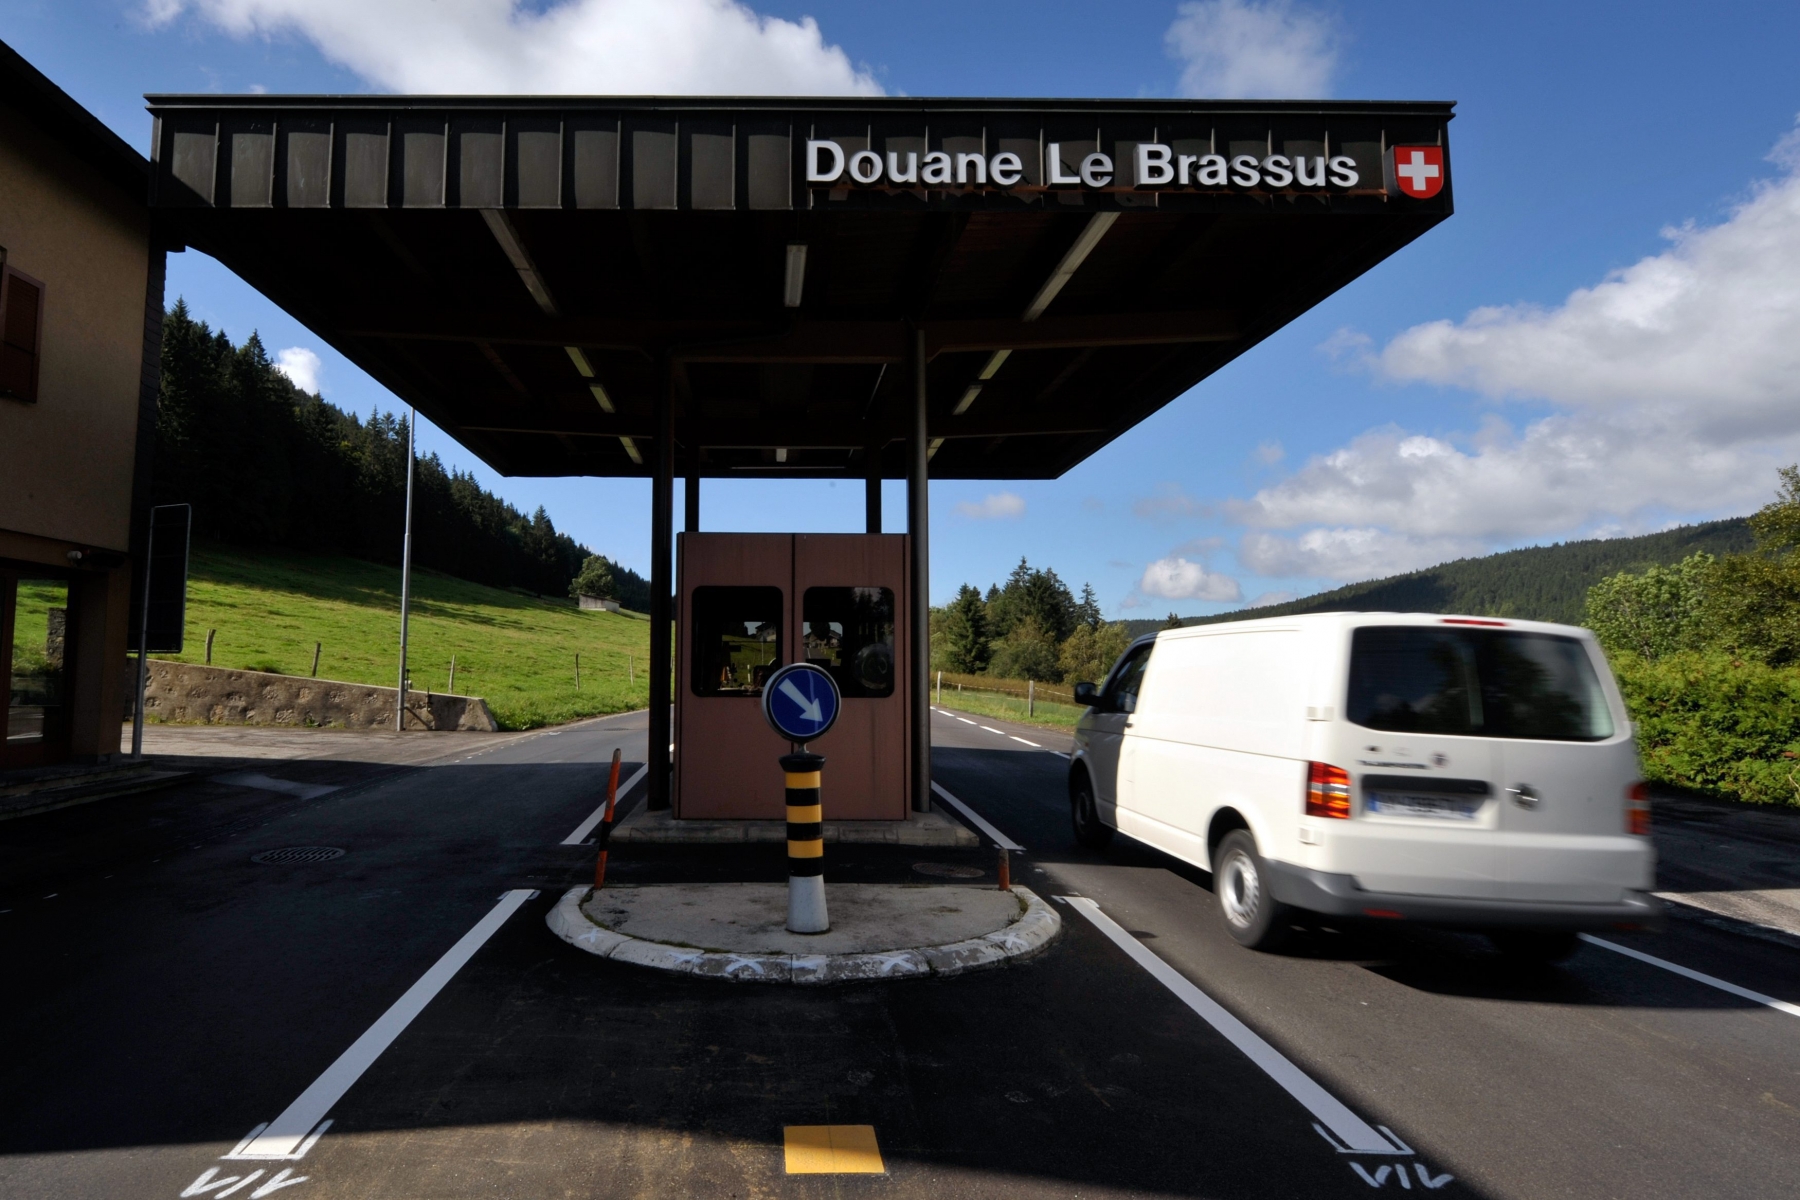 Le poste de Douane non garde  "Le Brassus", a la frontiere entre la Suisse et la France, dans la Vallee de Joux, photographie ce mardi 30 aout 2010. (KEYSTONE/Dominic Favre) 

